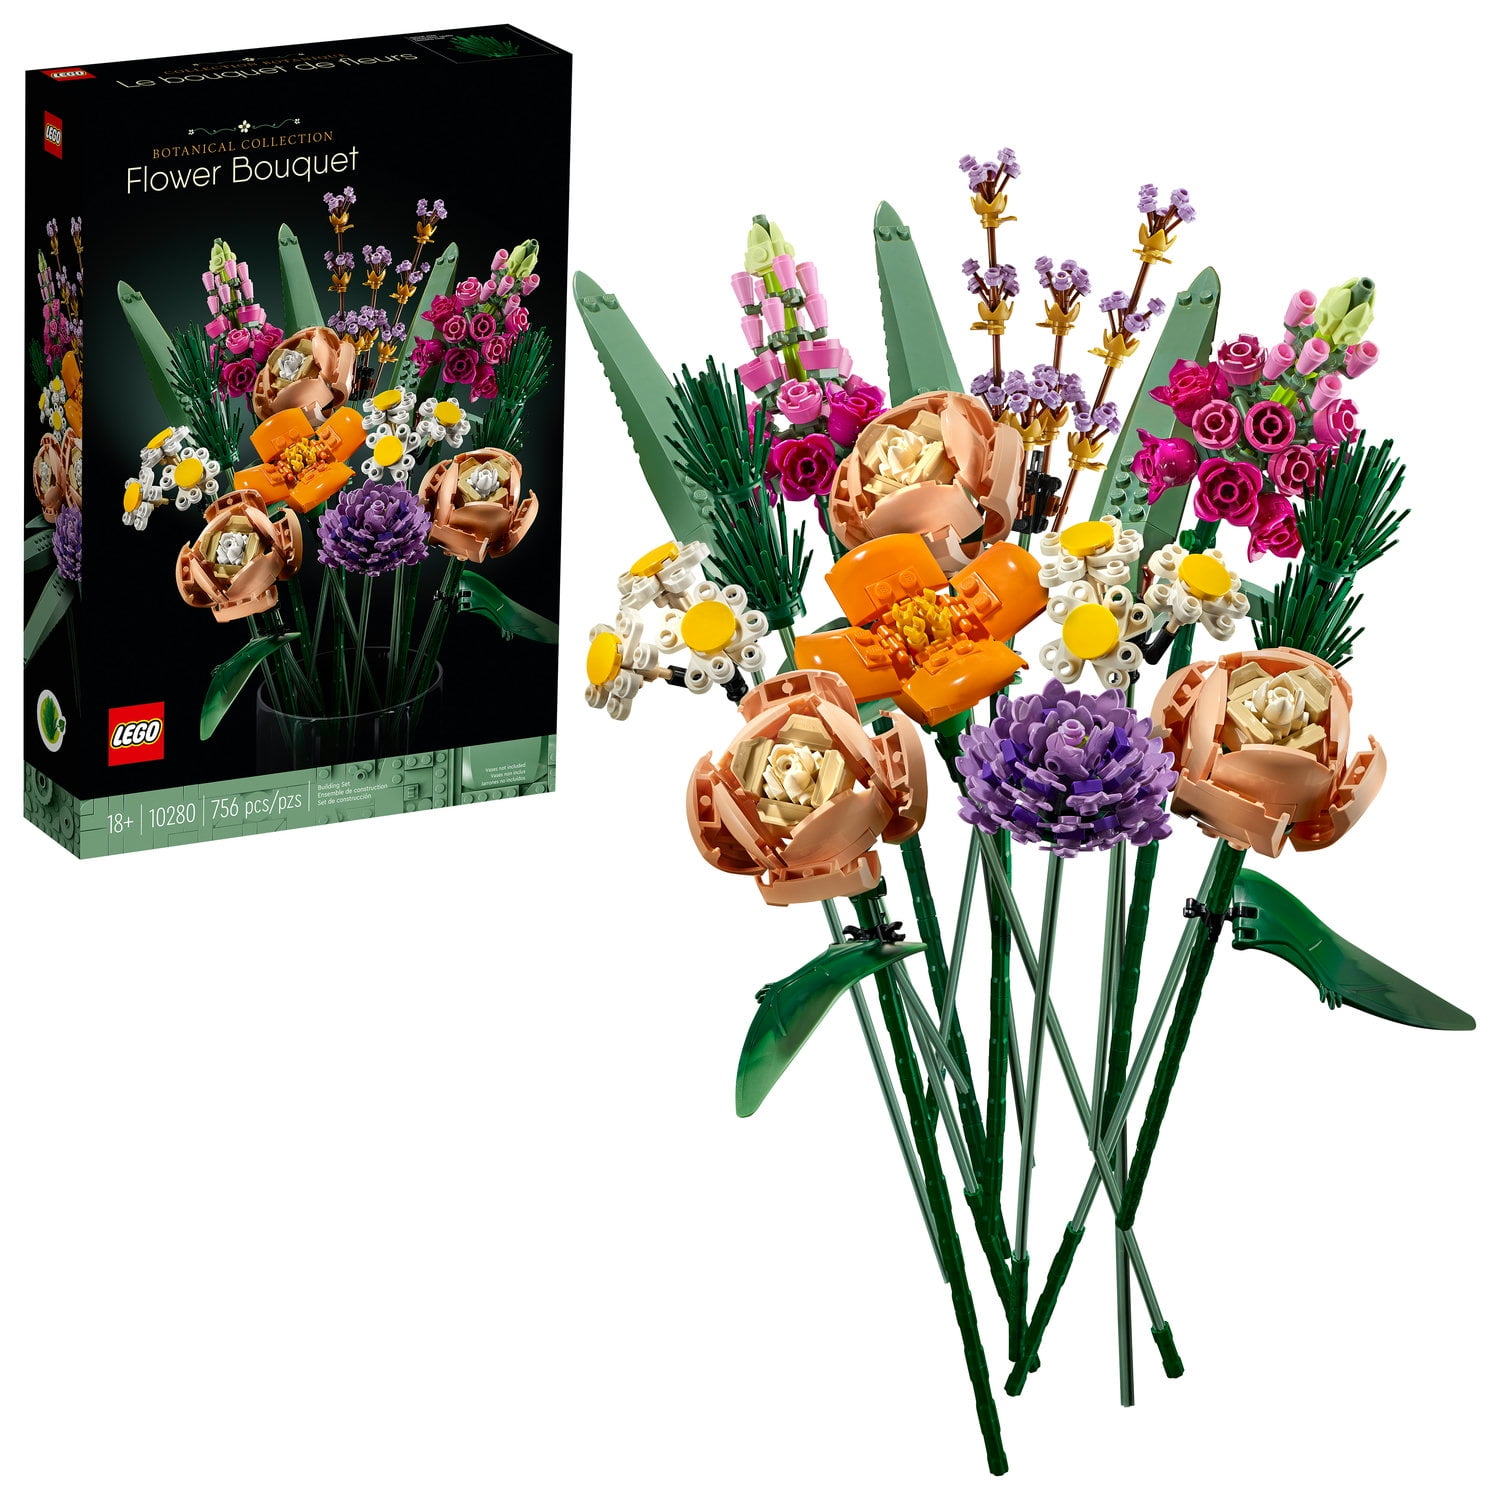 Creator Flowers Bouquet Building Blocks Moc Miniascape Decoration Flower Bricks 